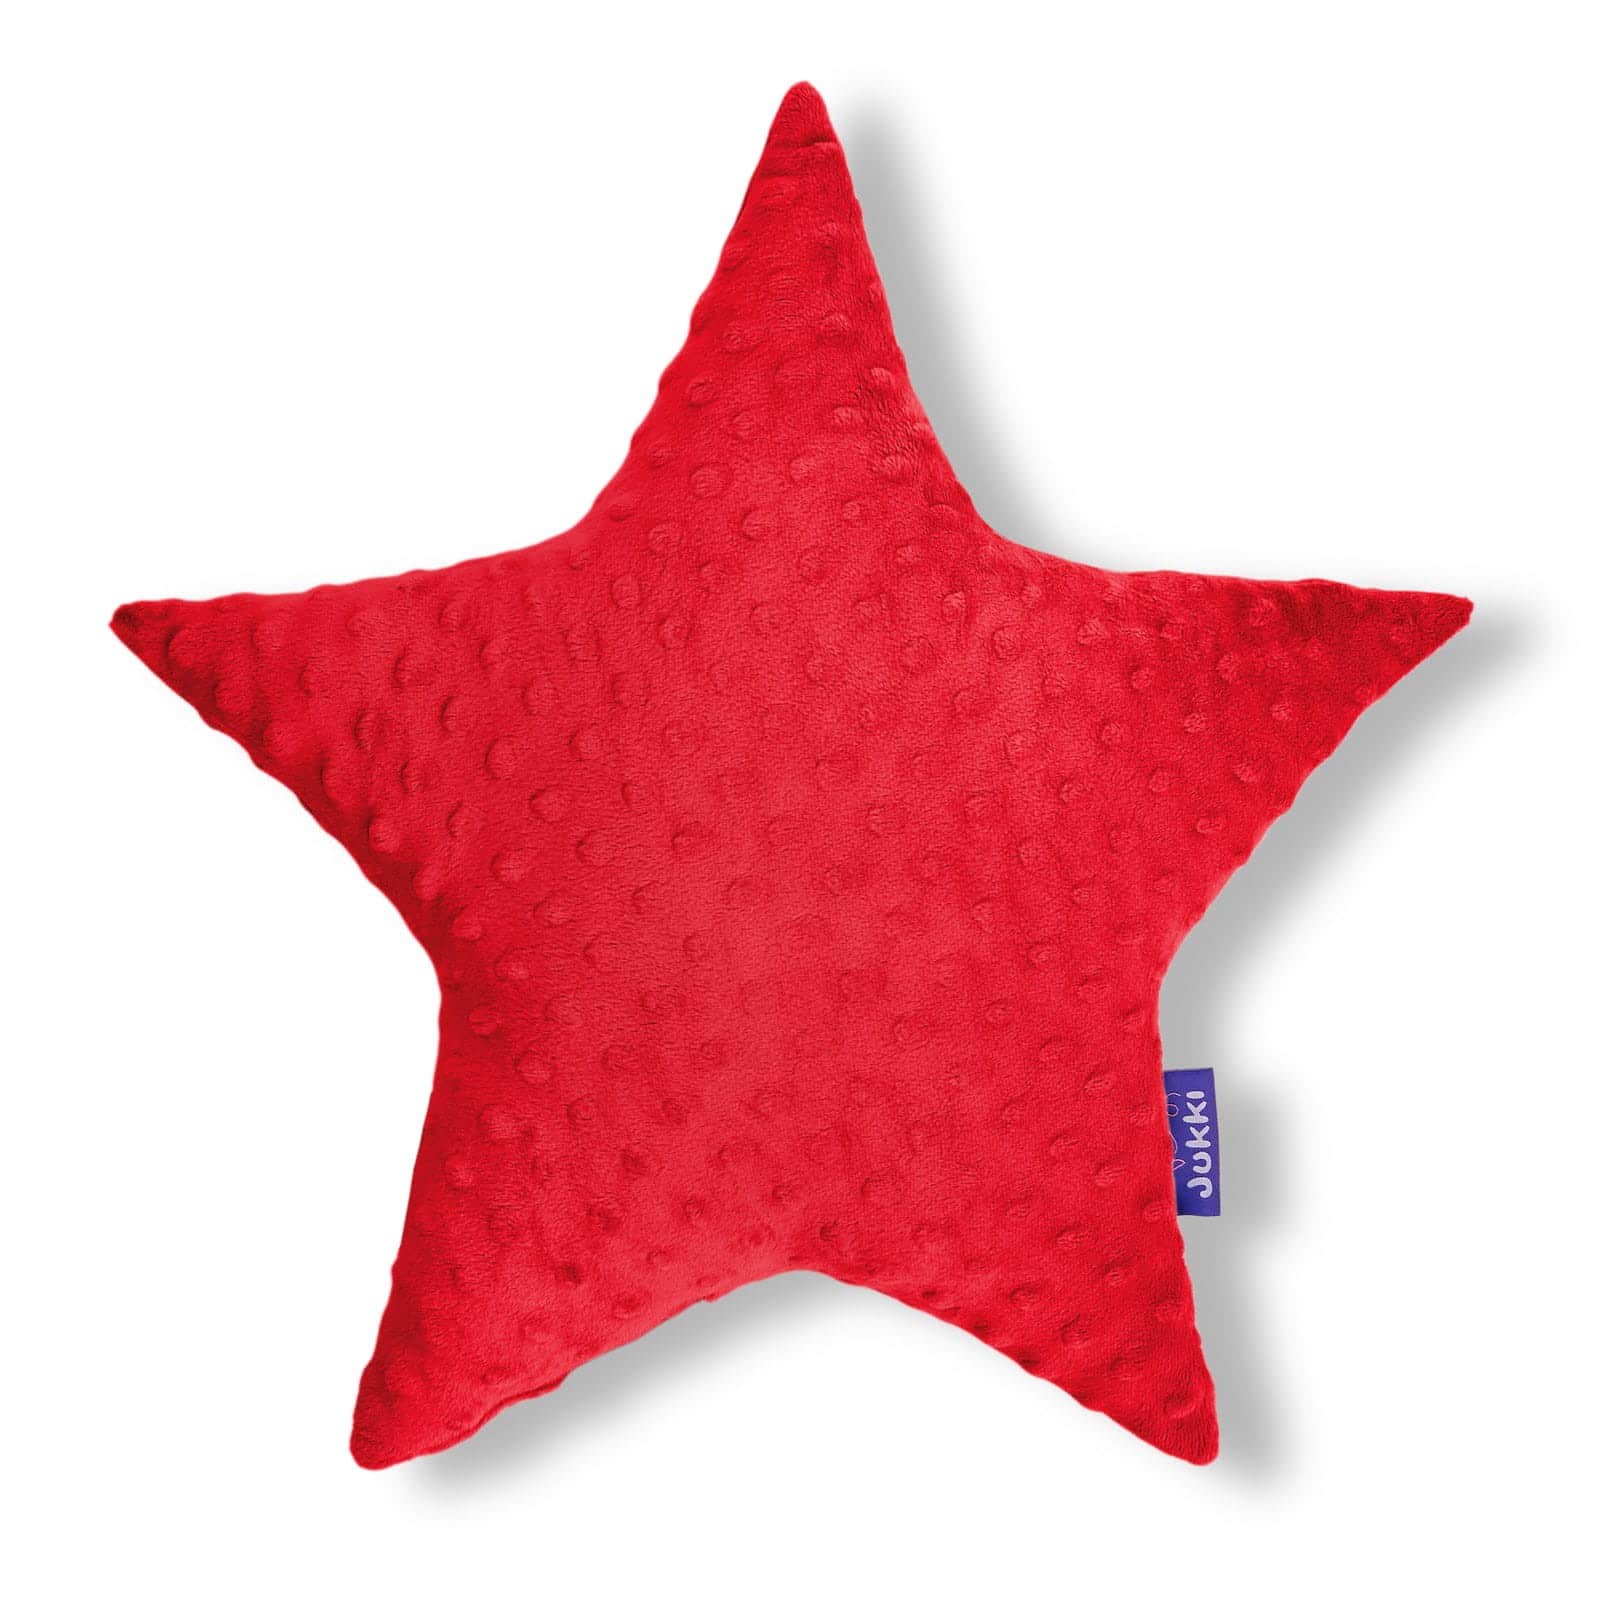 Μαξιλαρι Διακοσμητικό 40x40cm Jukki Red Star 5907534753240 991996